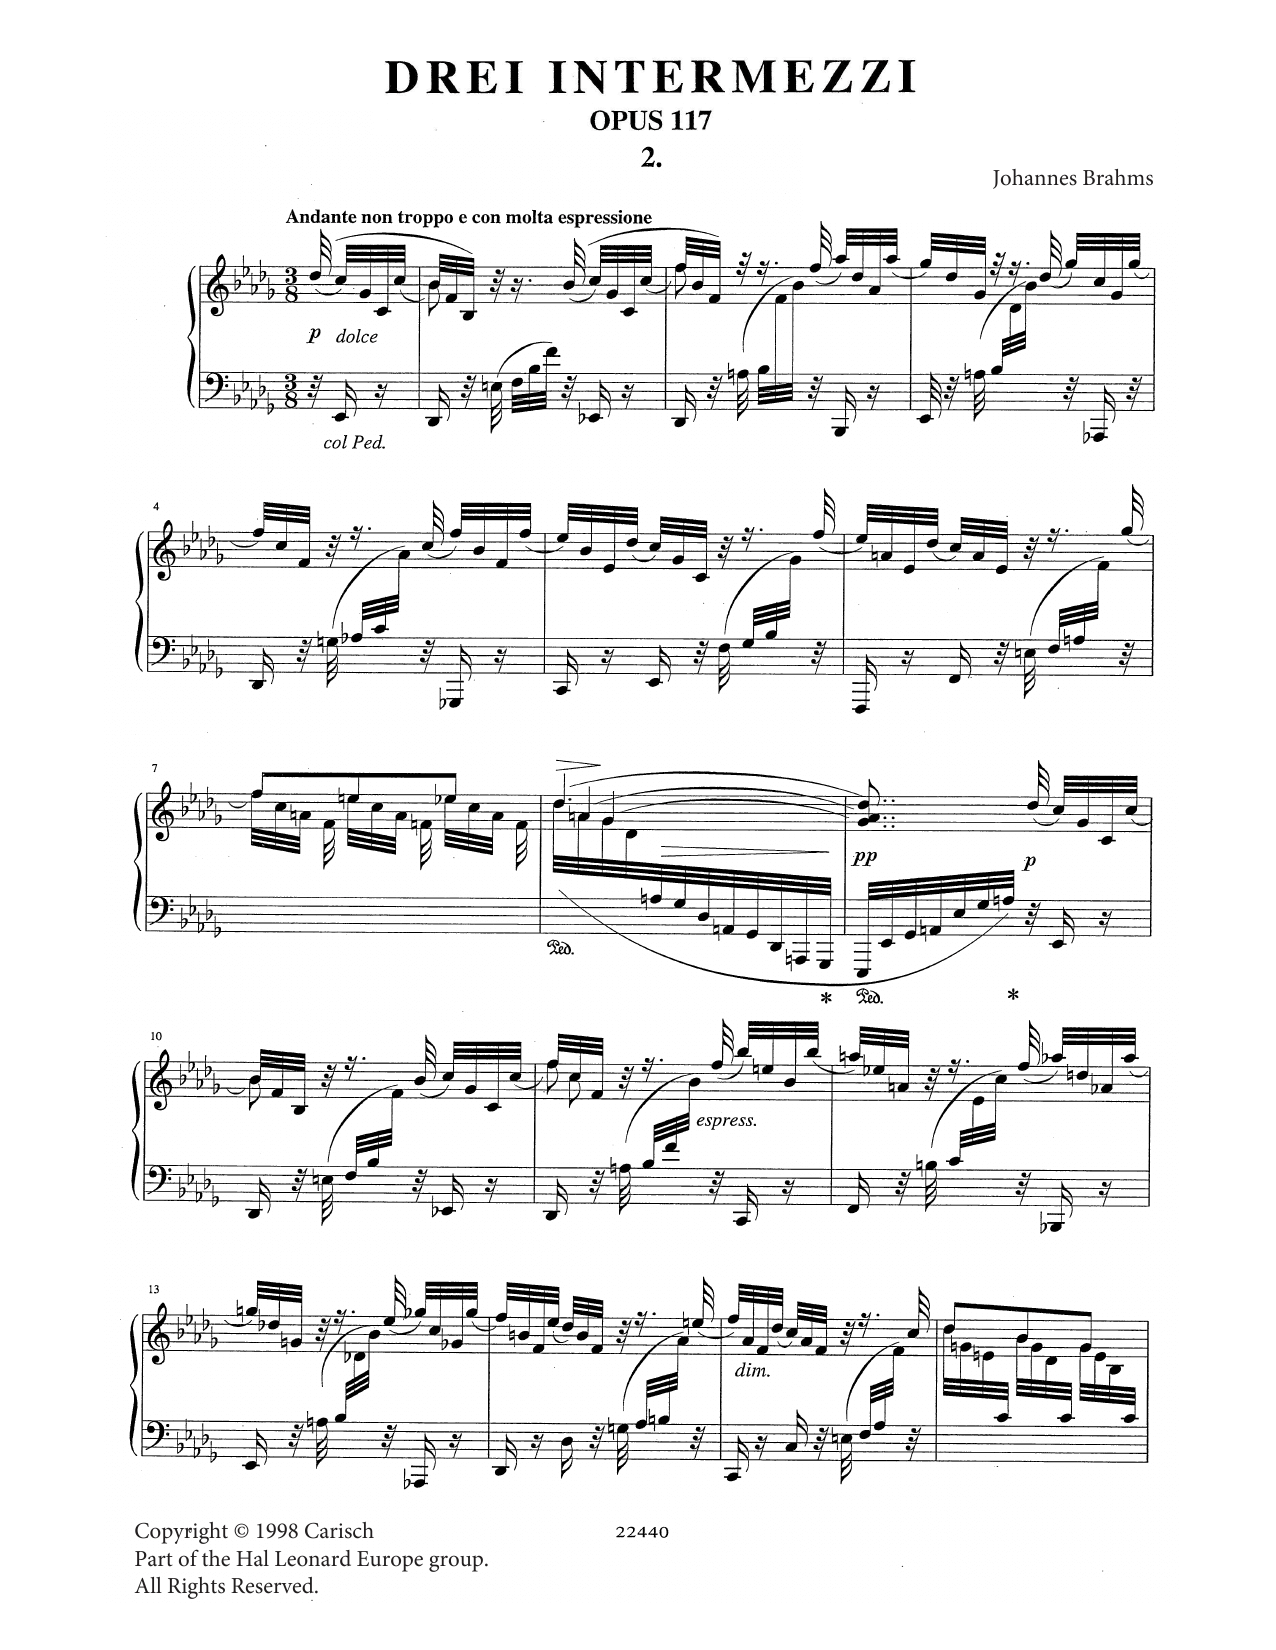 Intermezzo in B Flat Minor Op. 117 No. 2 (Piano Solo) von Johannes Brahms